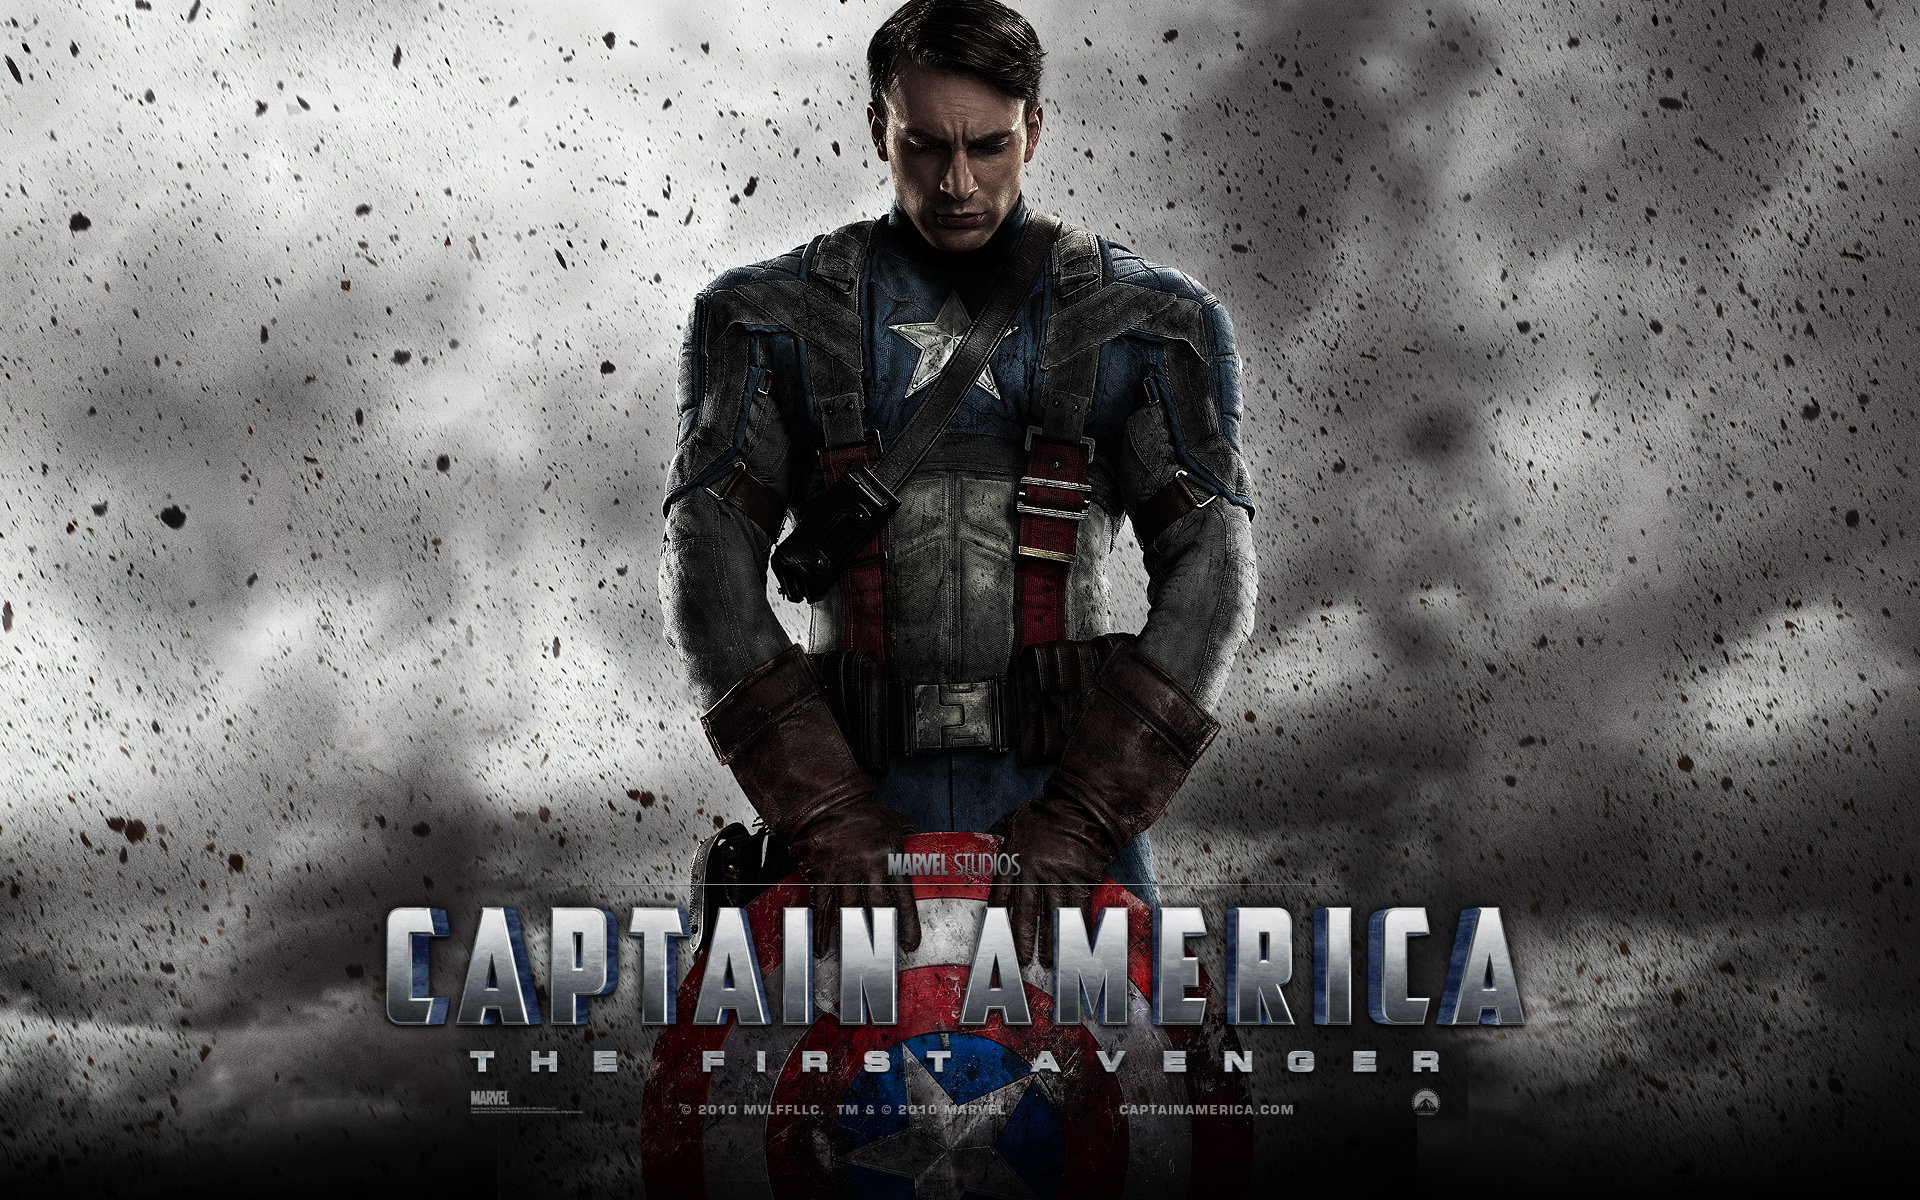 Captain America: The First Avenger 美国队长 高清壁纸14 - 1280x1024 壁纸下载 ...